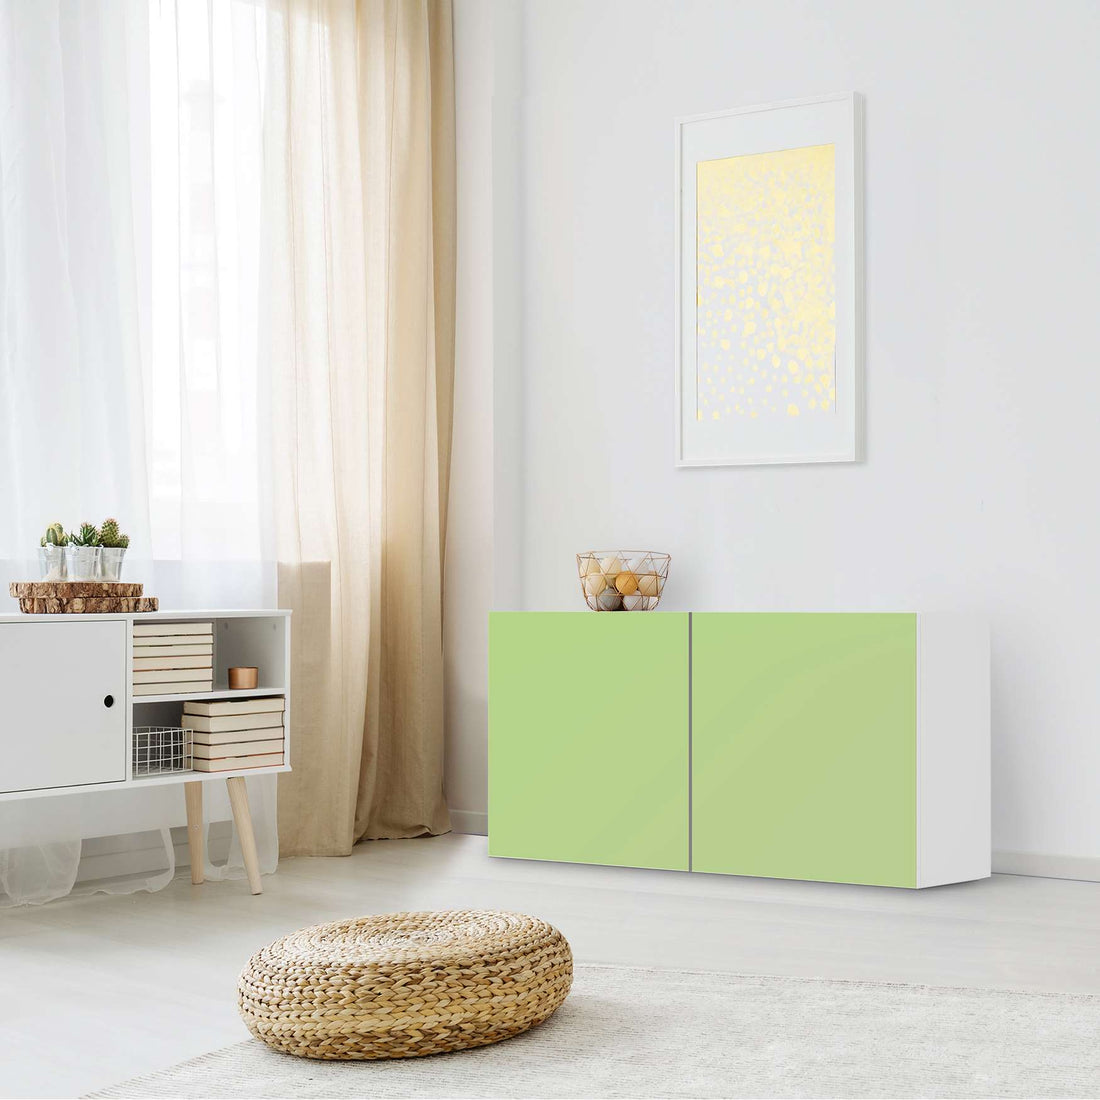 Folie für Möbel Hellgrün Light - IKEA Besta Regal Quer 2 Türen - Wohnzimmer